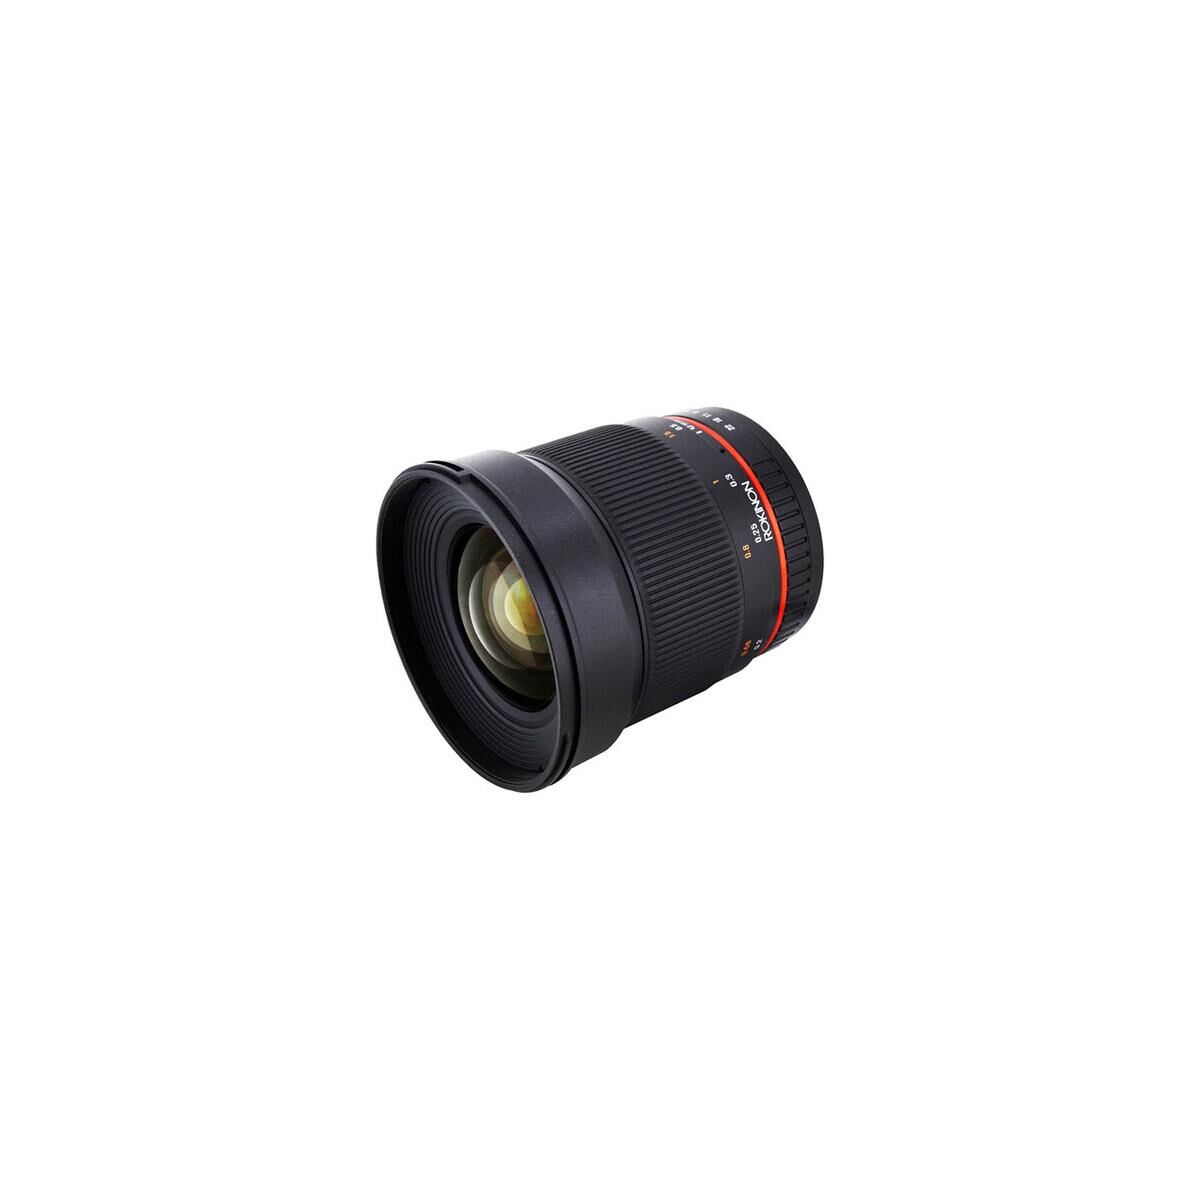 Rokinon 16mm F/2.0 ED AS UMC CS Lens for Canon M Mount Cameras